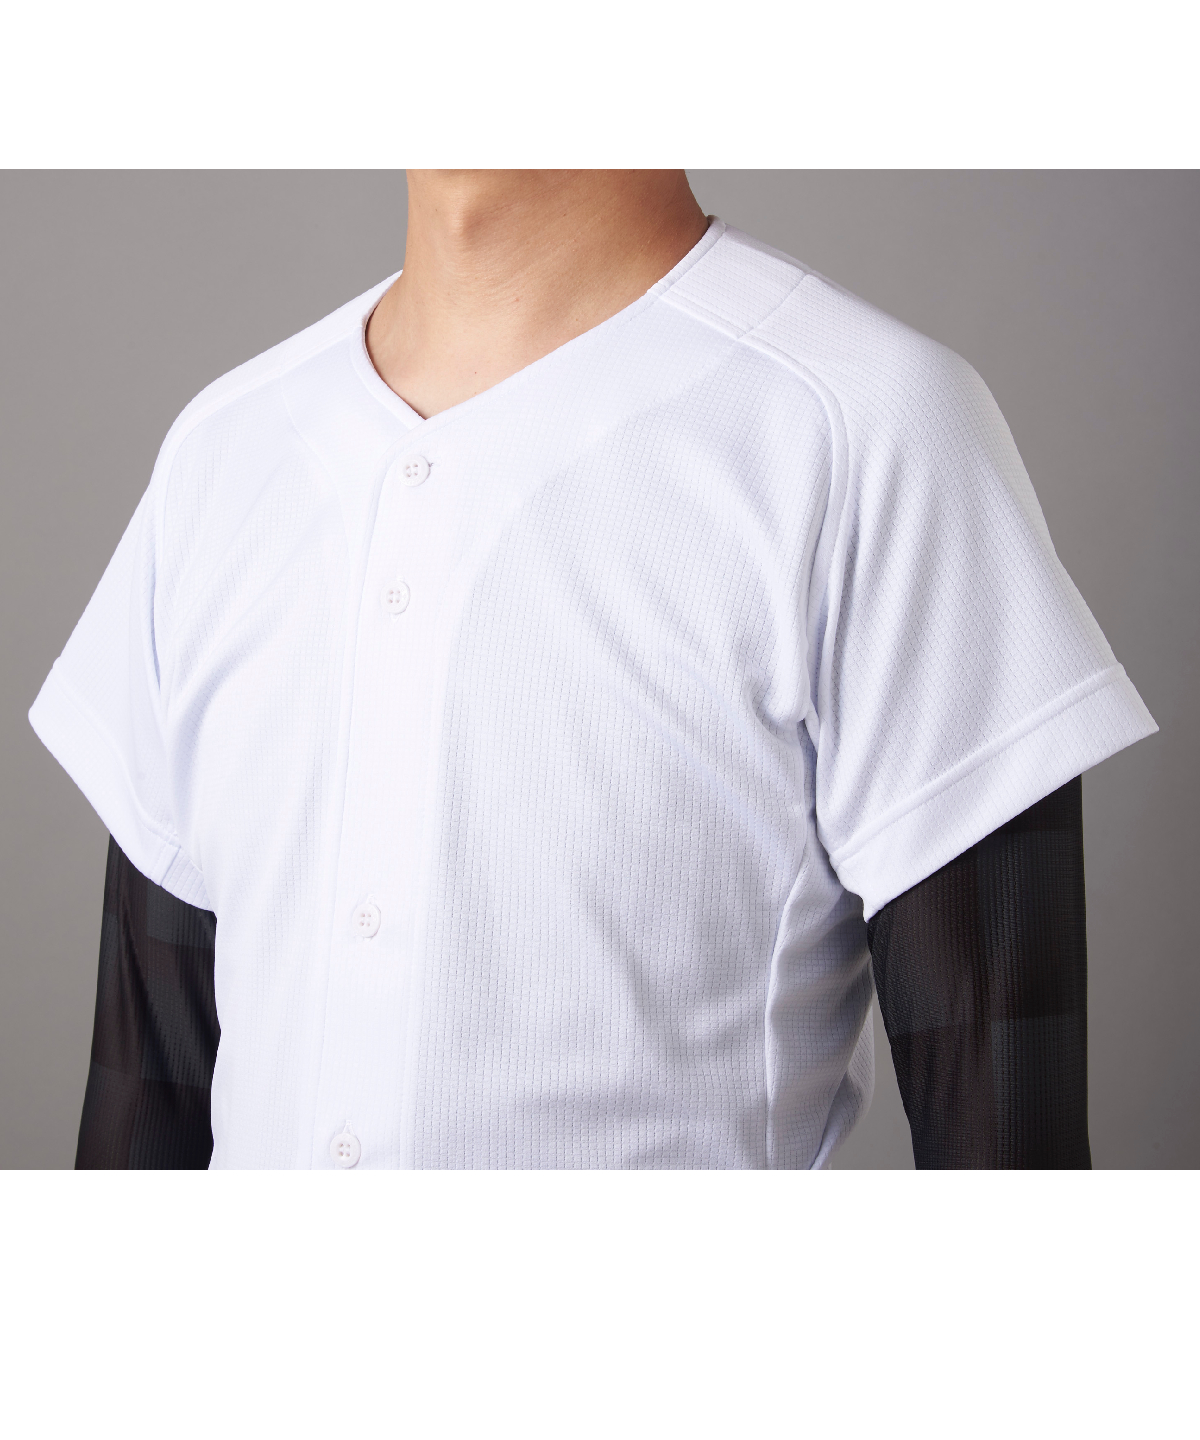 948円 激安直営店 野球ウェア メンズ デサント DESCENTE ベースボールシャツ 半袖 ユニフォームシャツ 一般 学生 ベースボール チーム DB-116